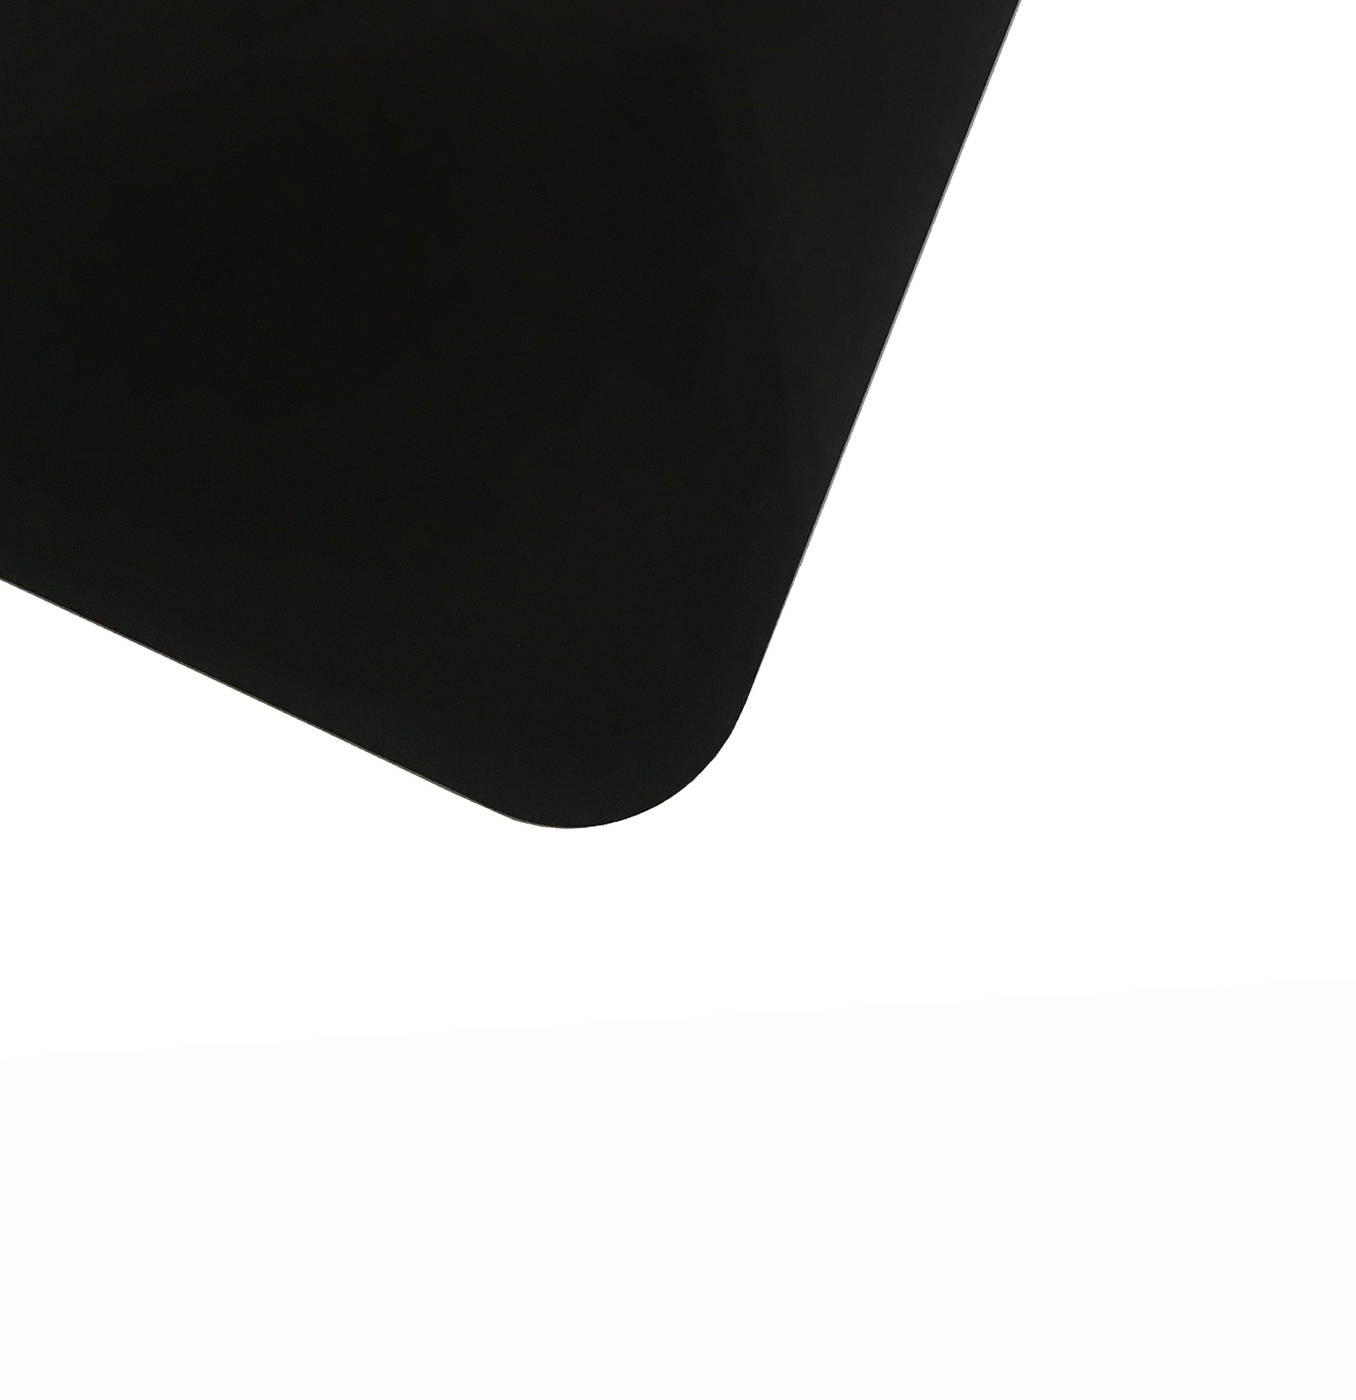 Планшет для пленэра из оргстекла 3 мм, под лист размера 40х60 см, цвет черный Dec-9082049 - фото 1